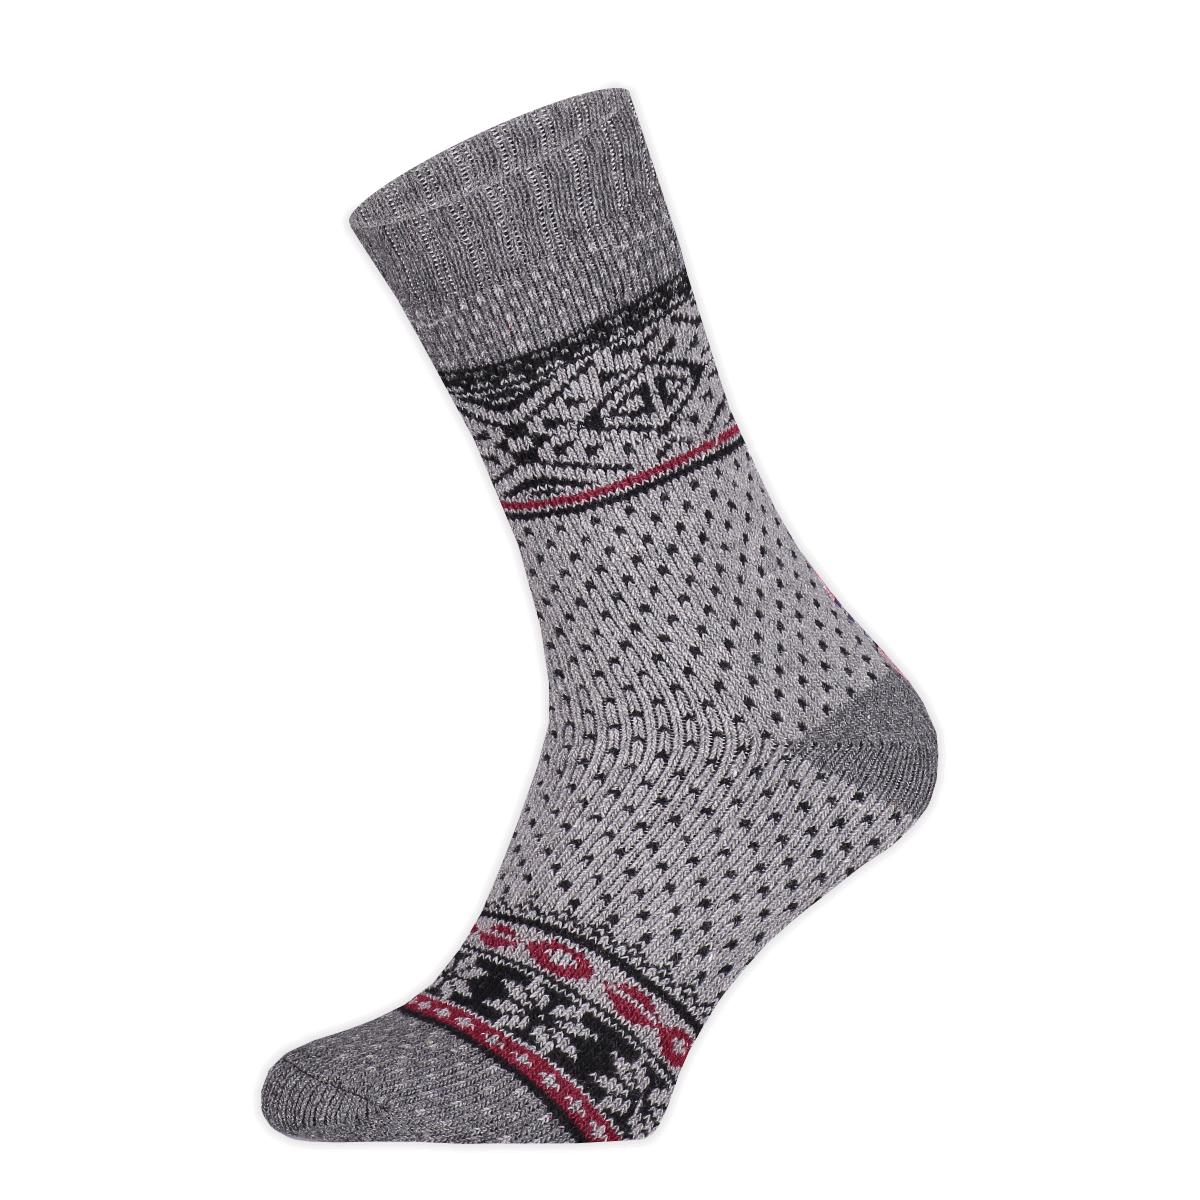 Basset - Heren - Wollen Nordic Socks - Herensokken - Winter - 45% Wol - Maat 43/46 - Grijs